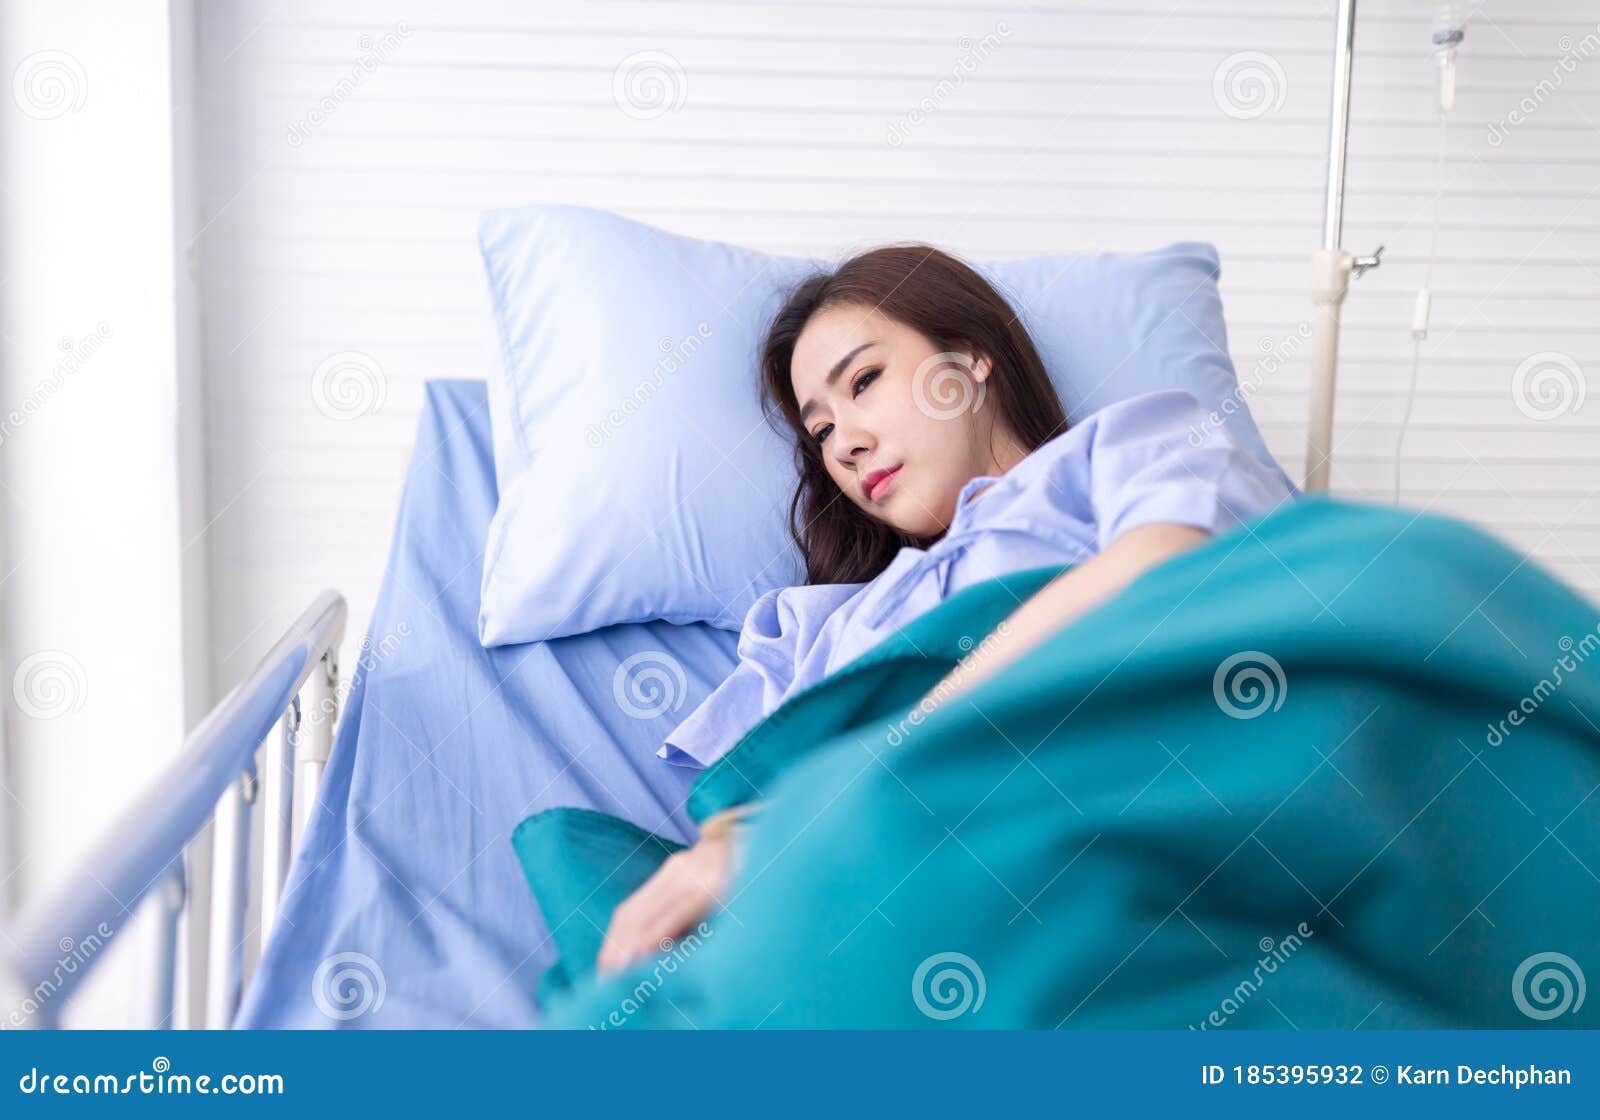 自己躺在病床上图片-图库-五毛网